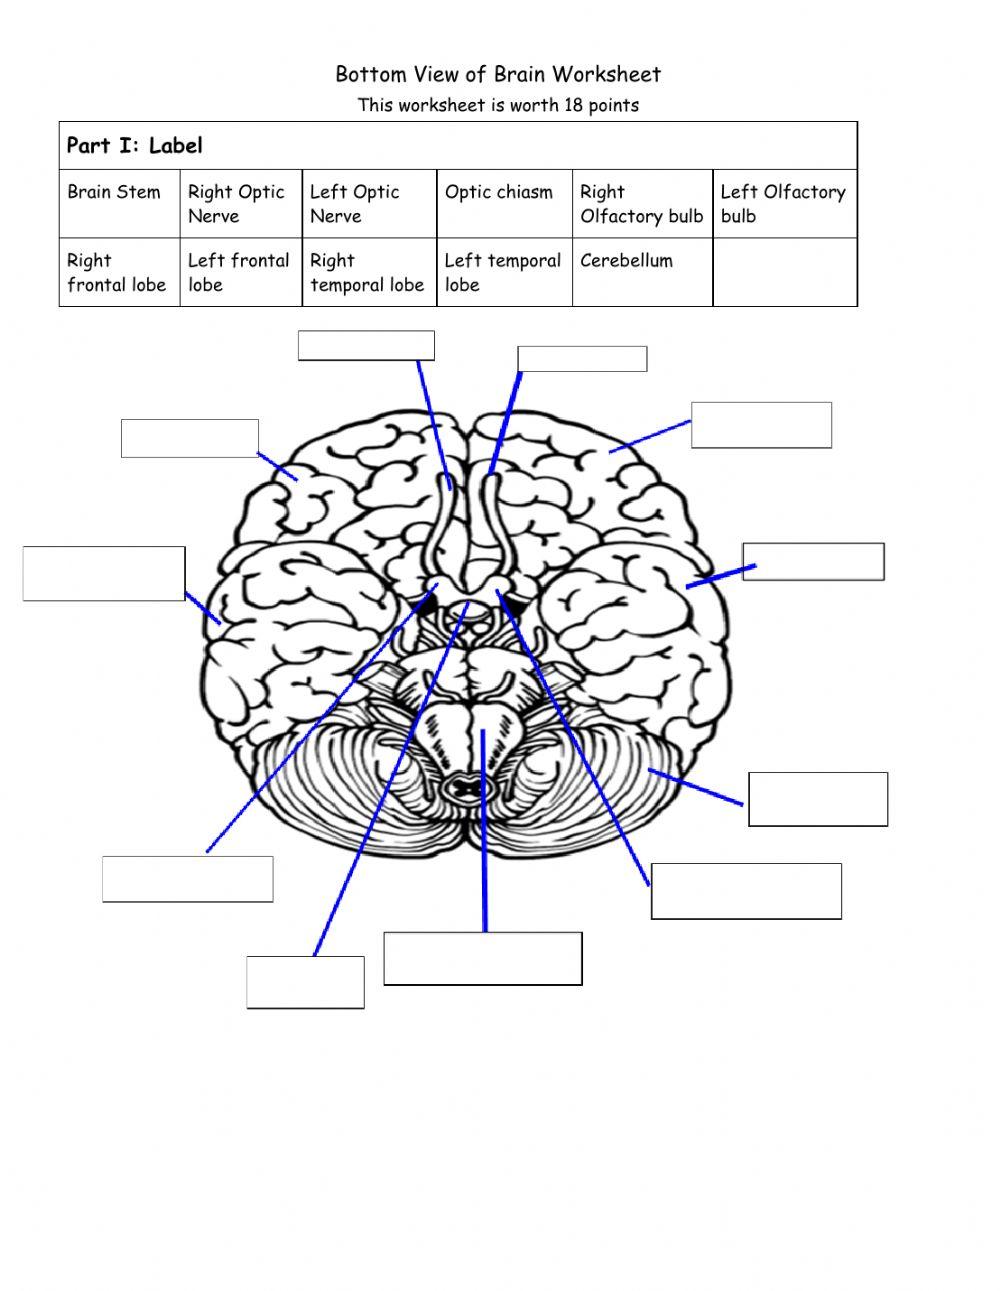 Bottom View of Brain Anatomy